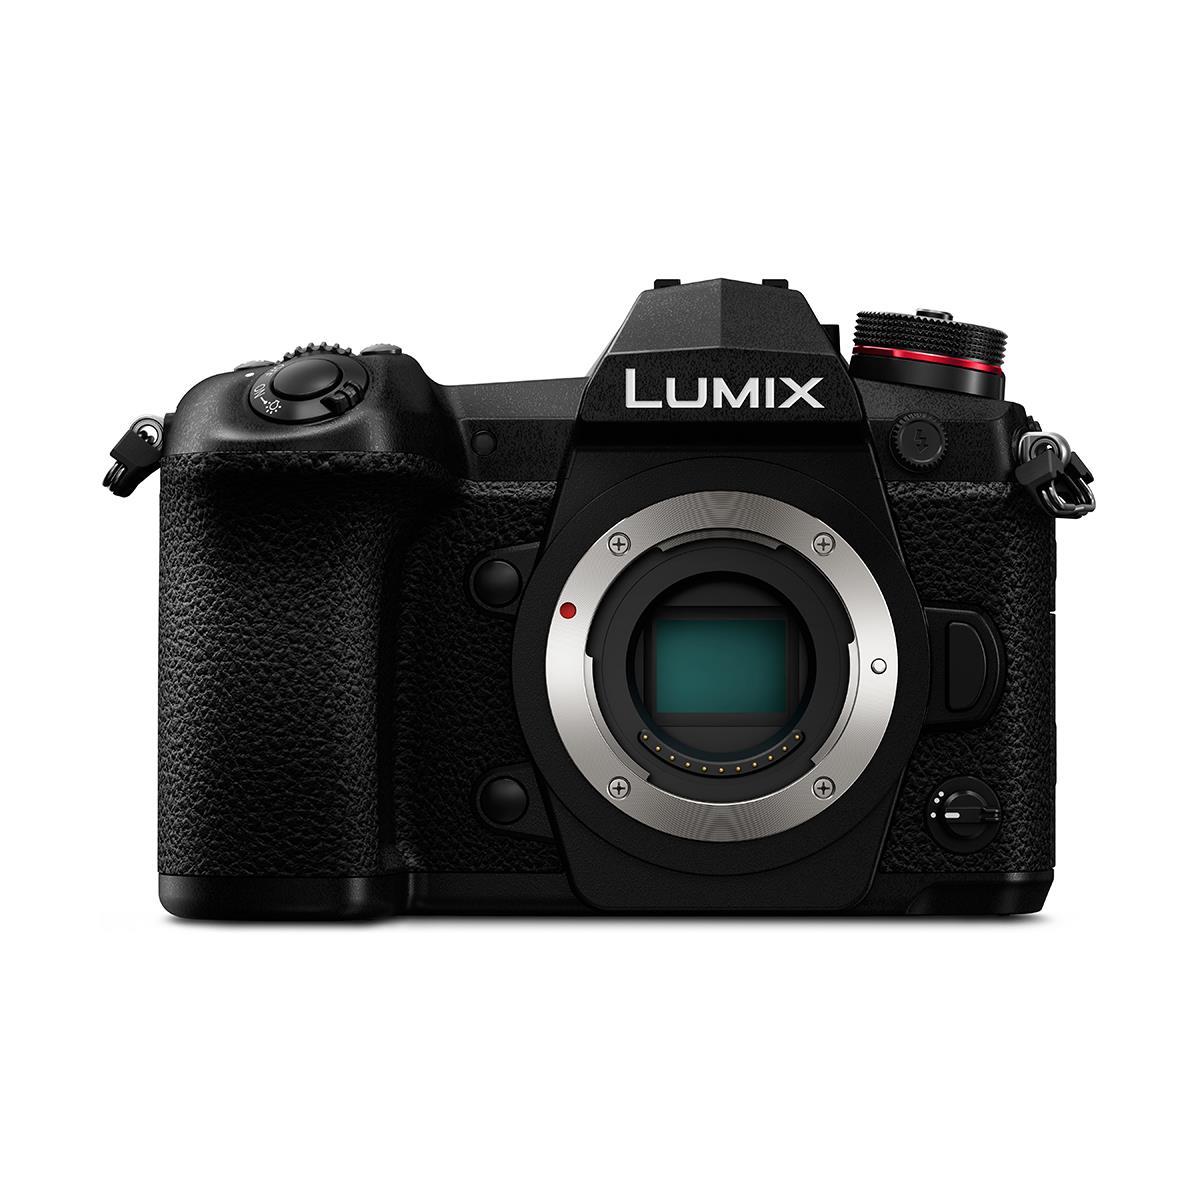 Image of Panasonic Lumix G9 Mirrorless Camera Body